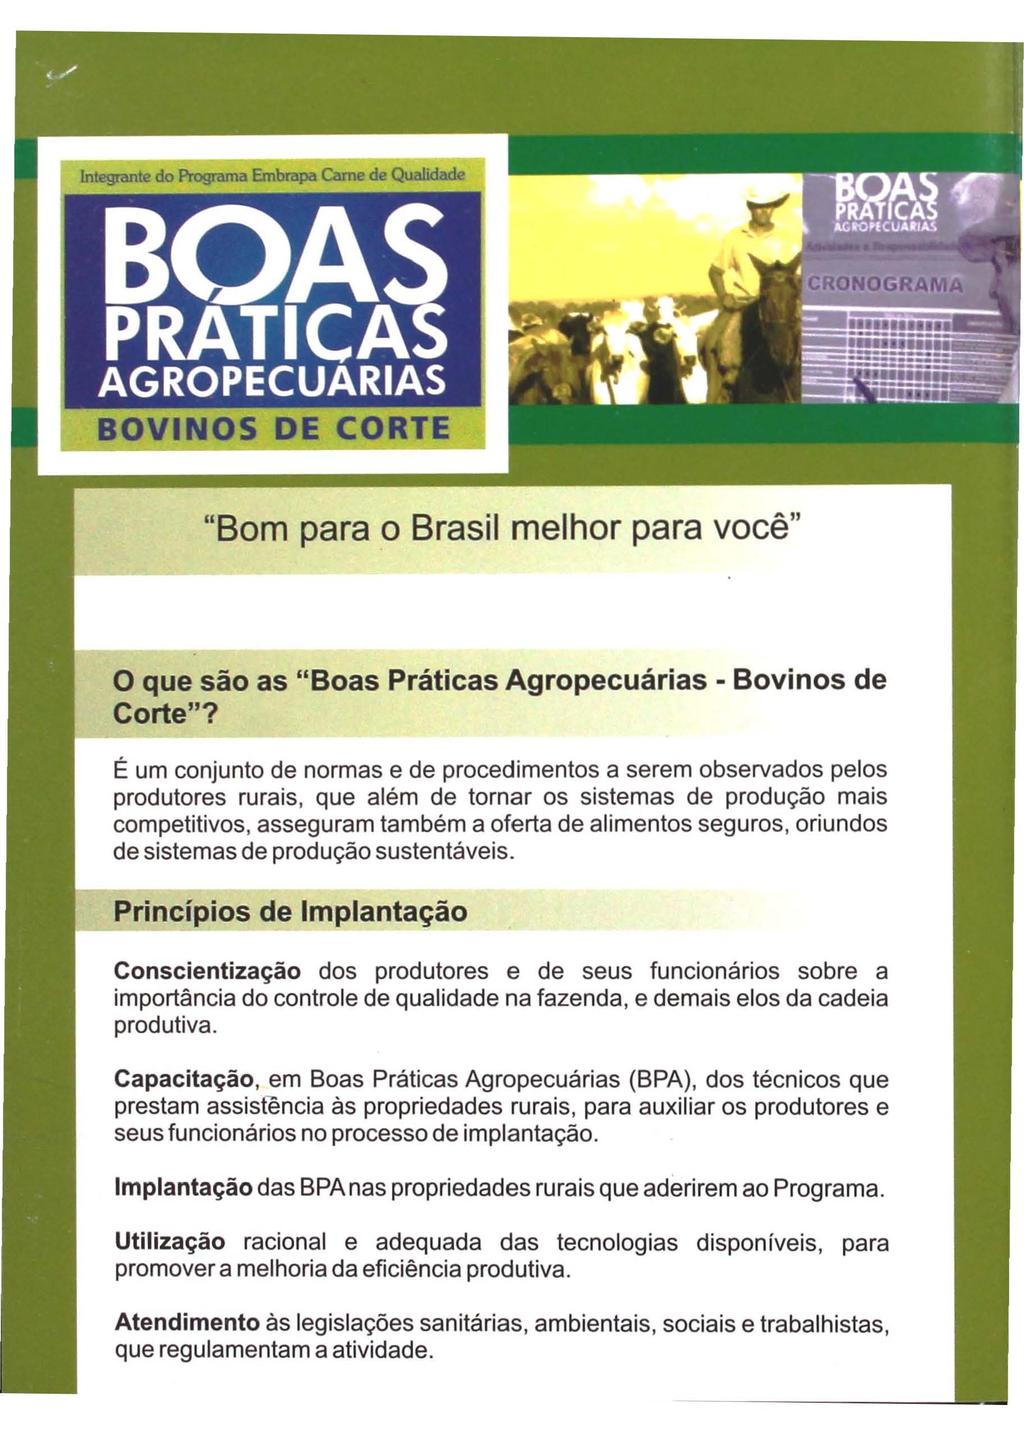 BOVINOS DE CORTE "Bom para o Brasil melhor para você" o que são as "Boas Práticas Agropecuárias - Bovinos de Corte"?